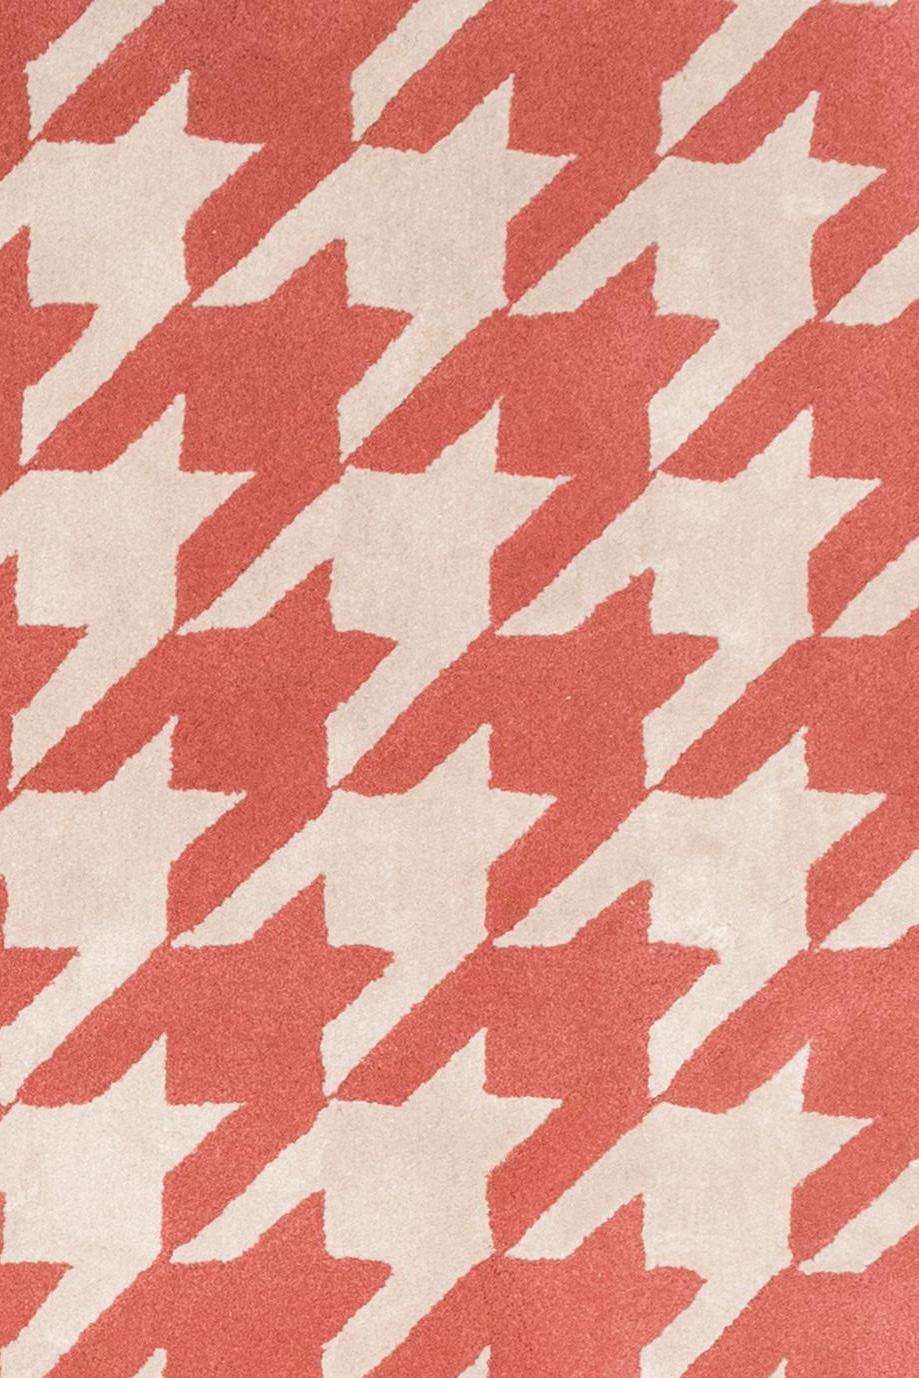 Dieser Teppich wird in Spanien in der Handtufting-Technik hergestellt.
Wir verwenden nur die feinsten natürlichen Garne, 50% Seide und 50% reine Schurwolle mit einer Stärke von 15 mm. 

- Auf Anfrage in jeder Größe und in jeder Farbe anpassbar.
-